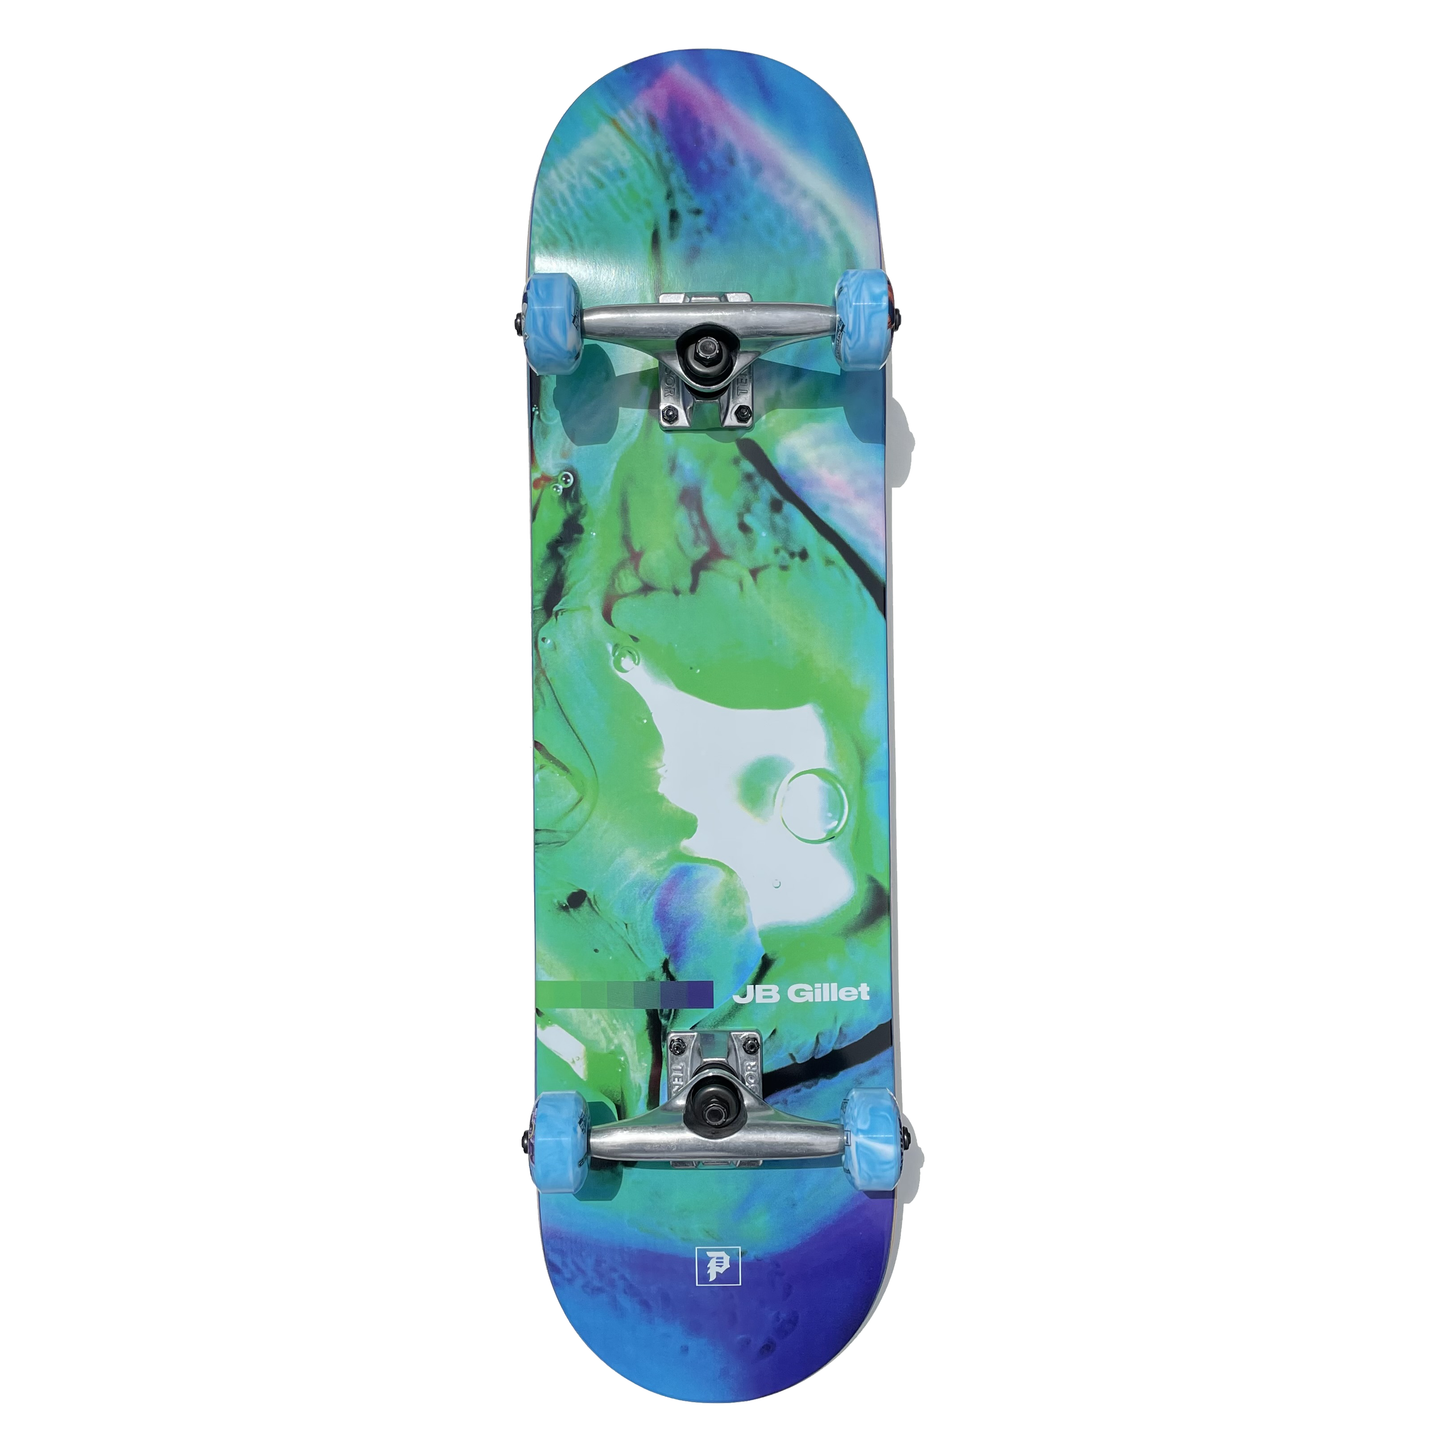 Primitive Gillet Oil Drop 8.125" Skateboard Complete